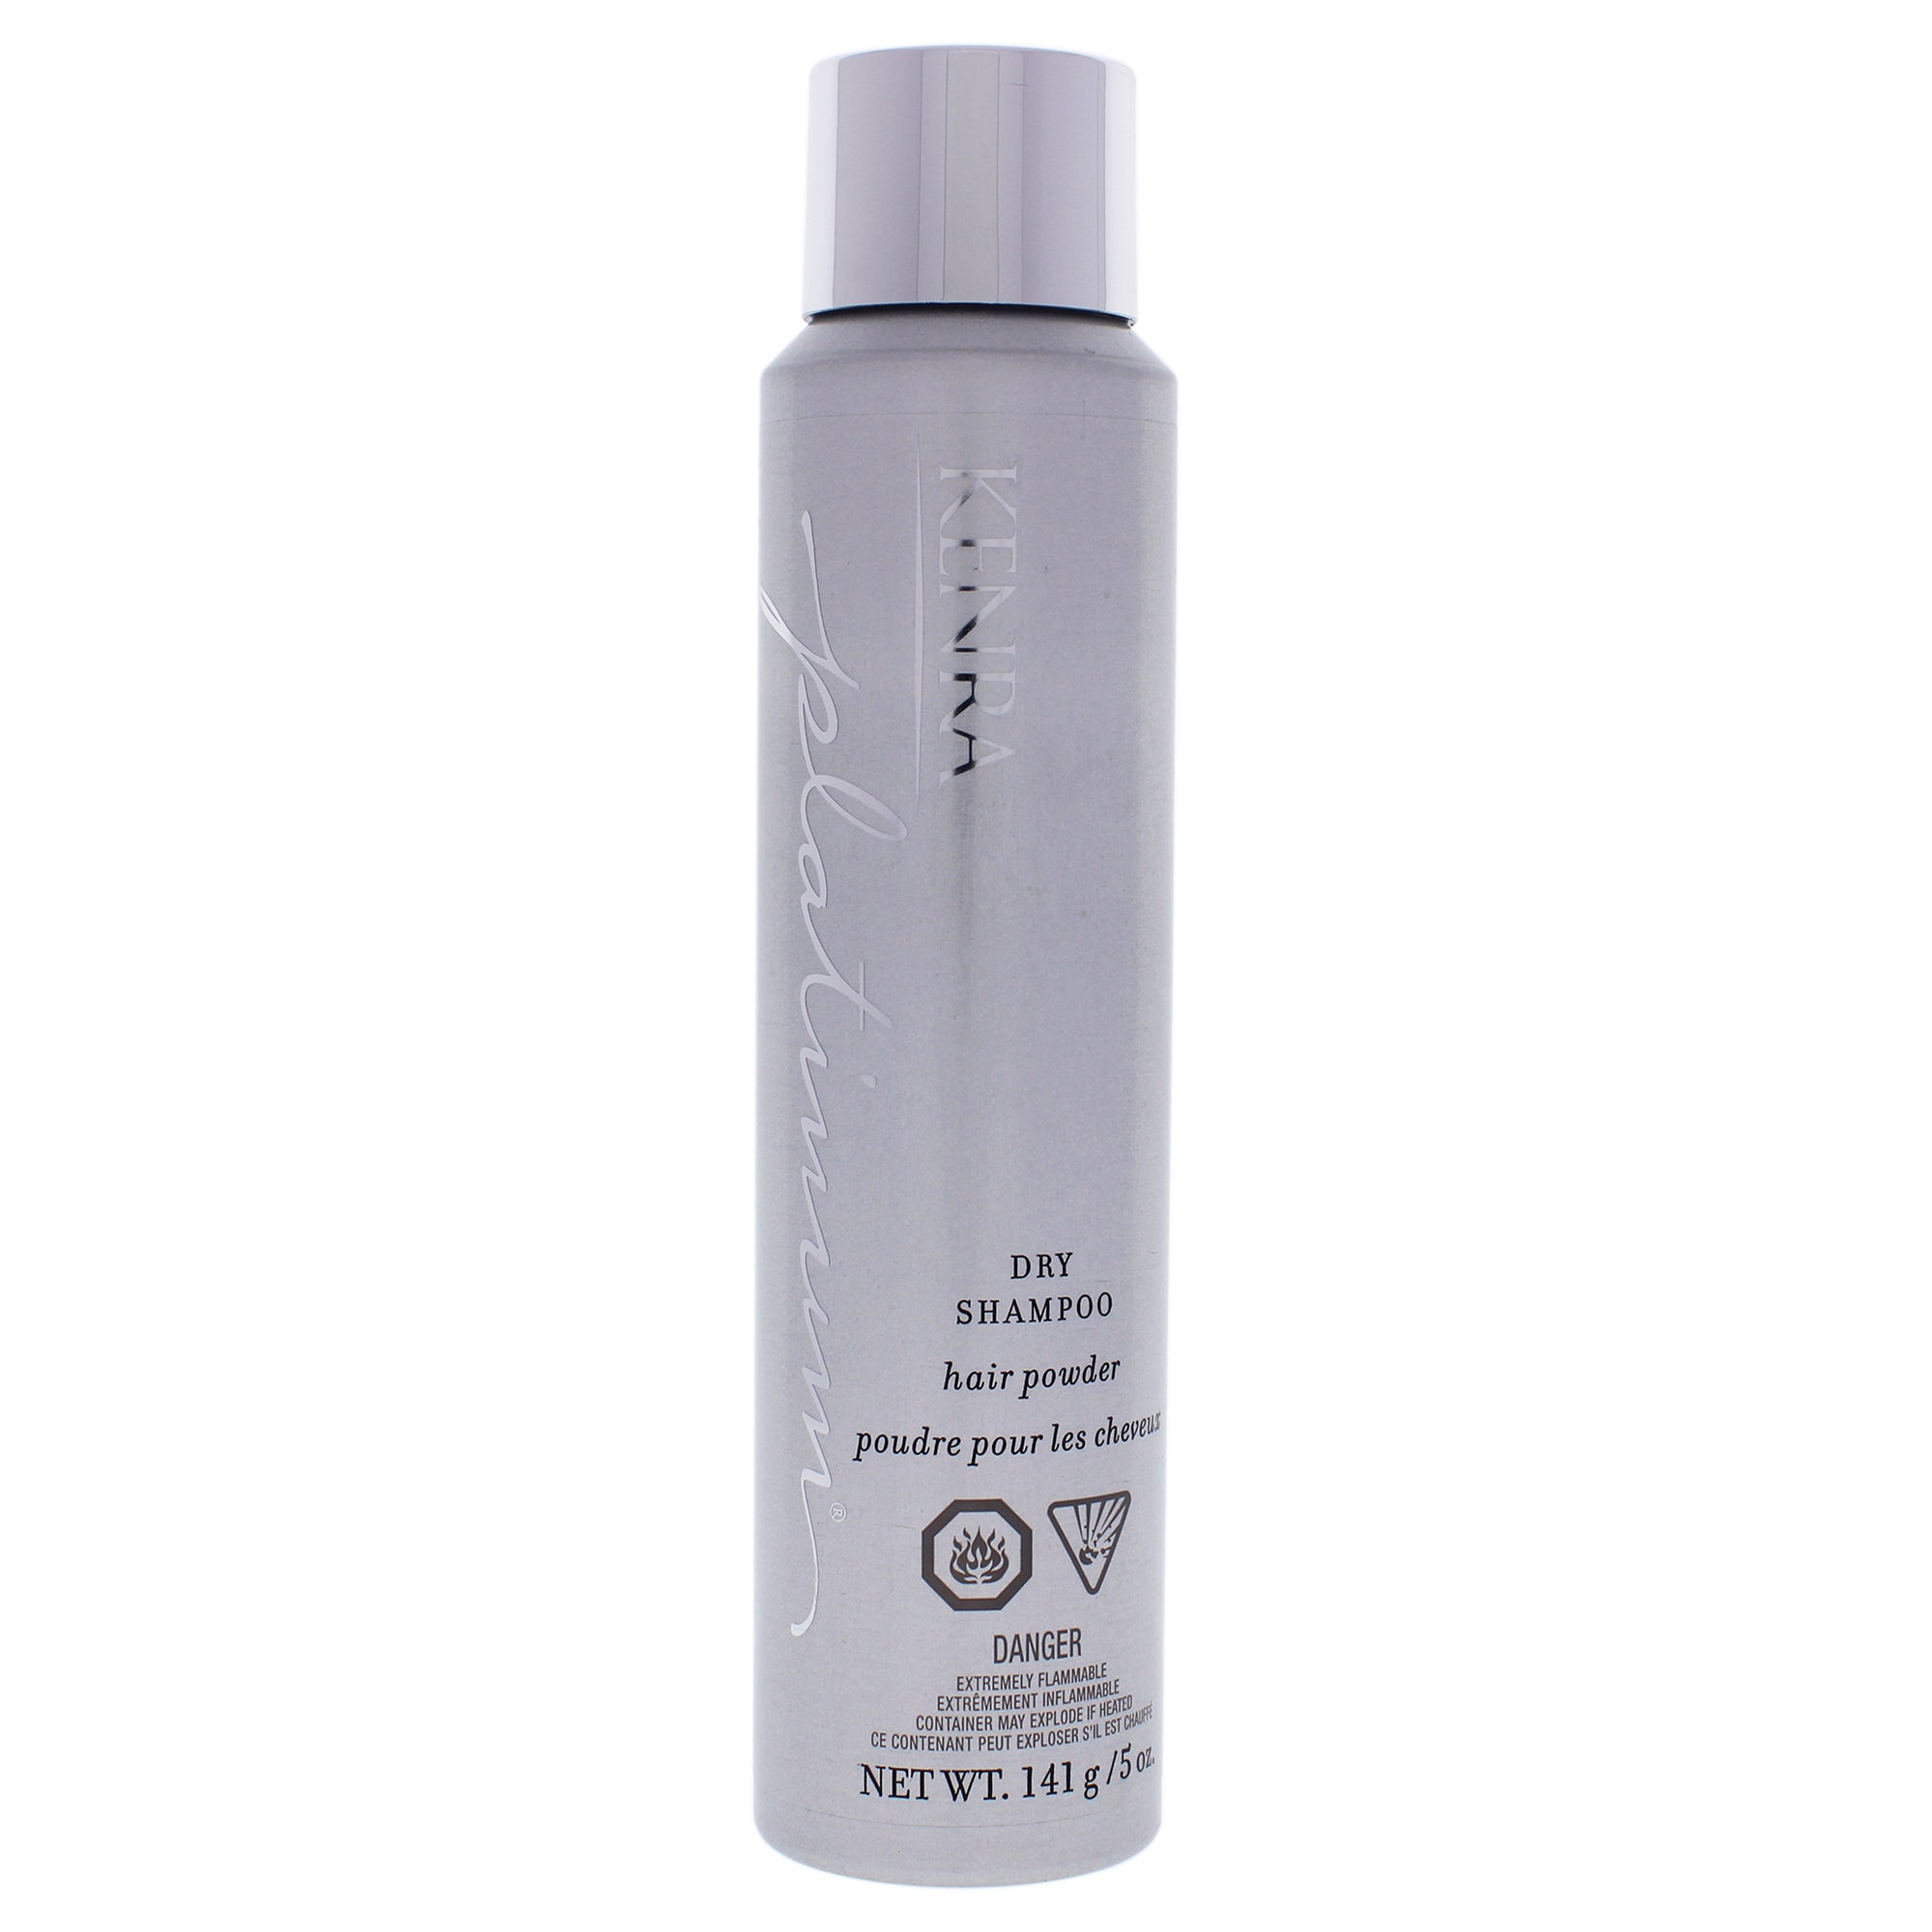 Platinum Dry Shampoo by Kenra for Unisex - 5 oz Dry Shampoo